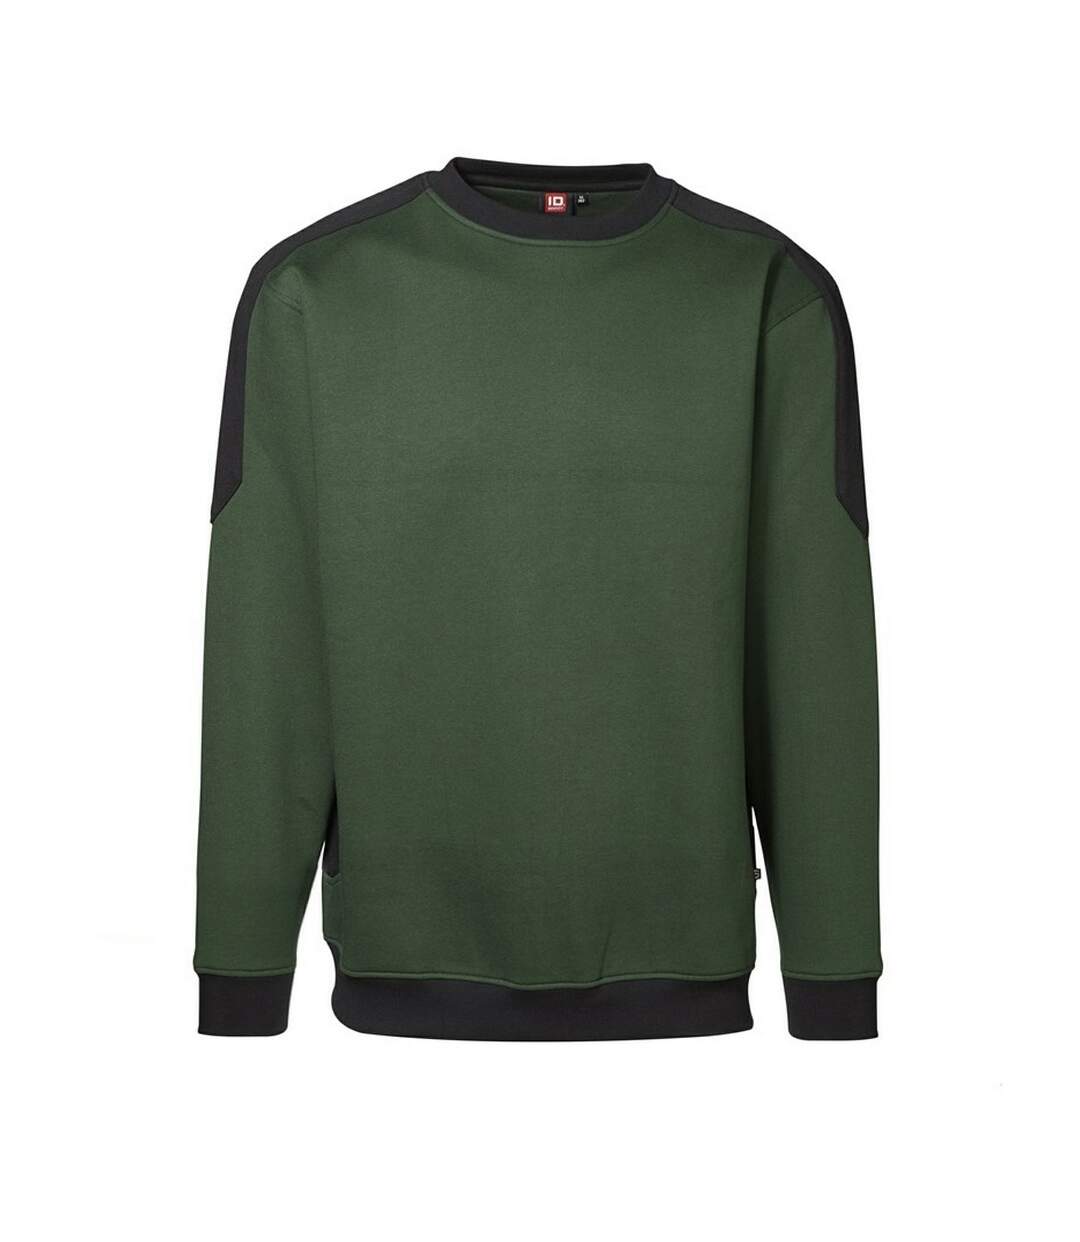 ID Mens Pro Wear Contrast Sweatshirt (Bottle green) - UTID149